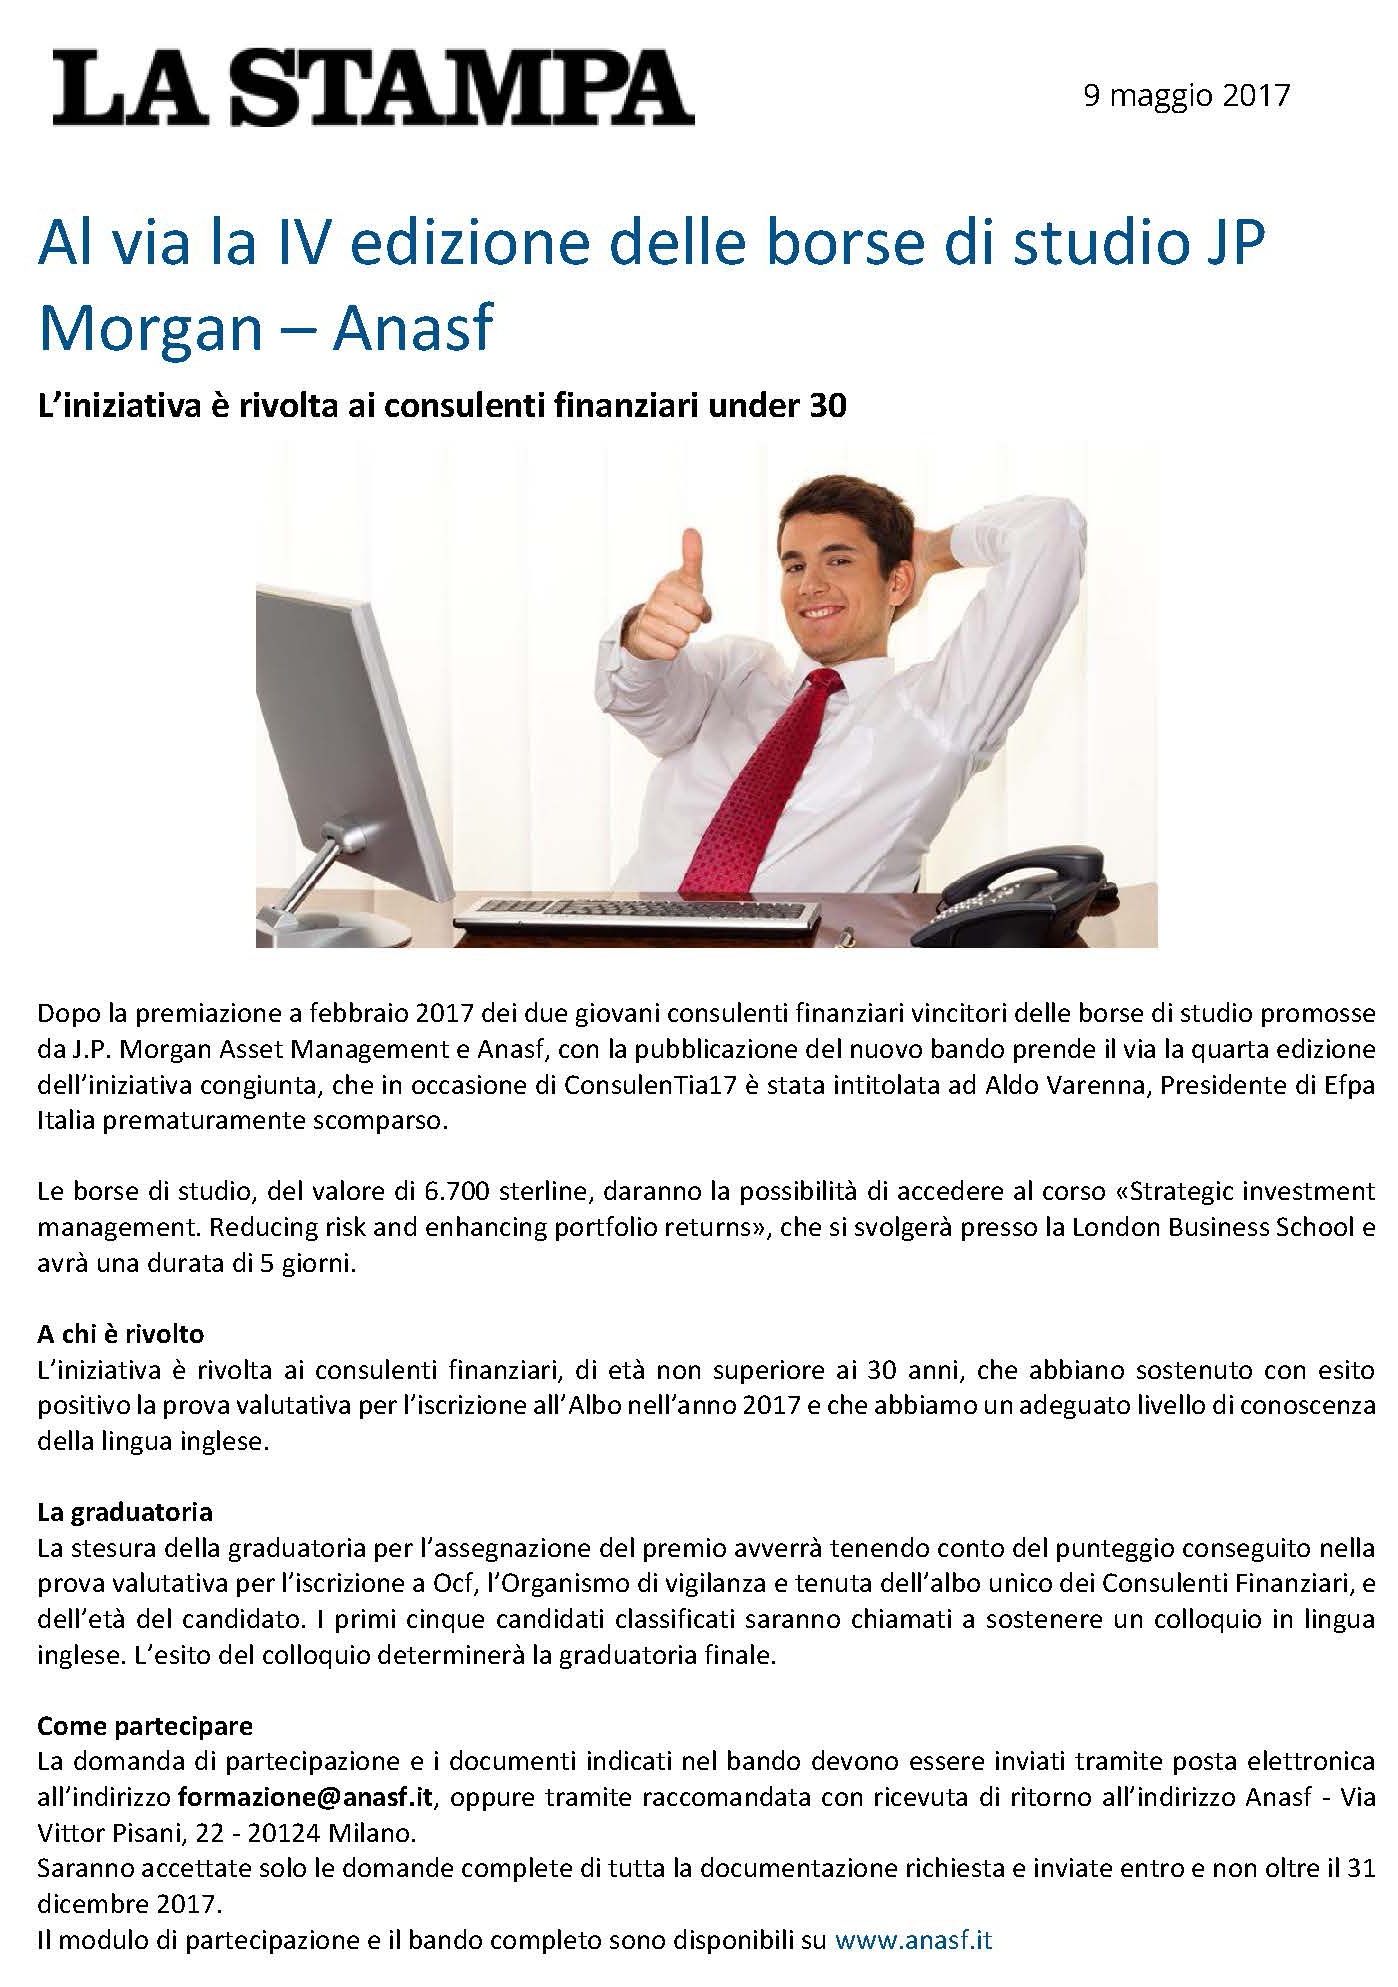 Al via la IV edizione delle borse di studio JP Morgan - Anasf